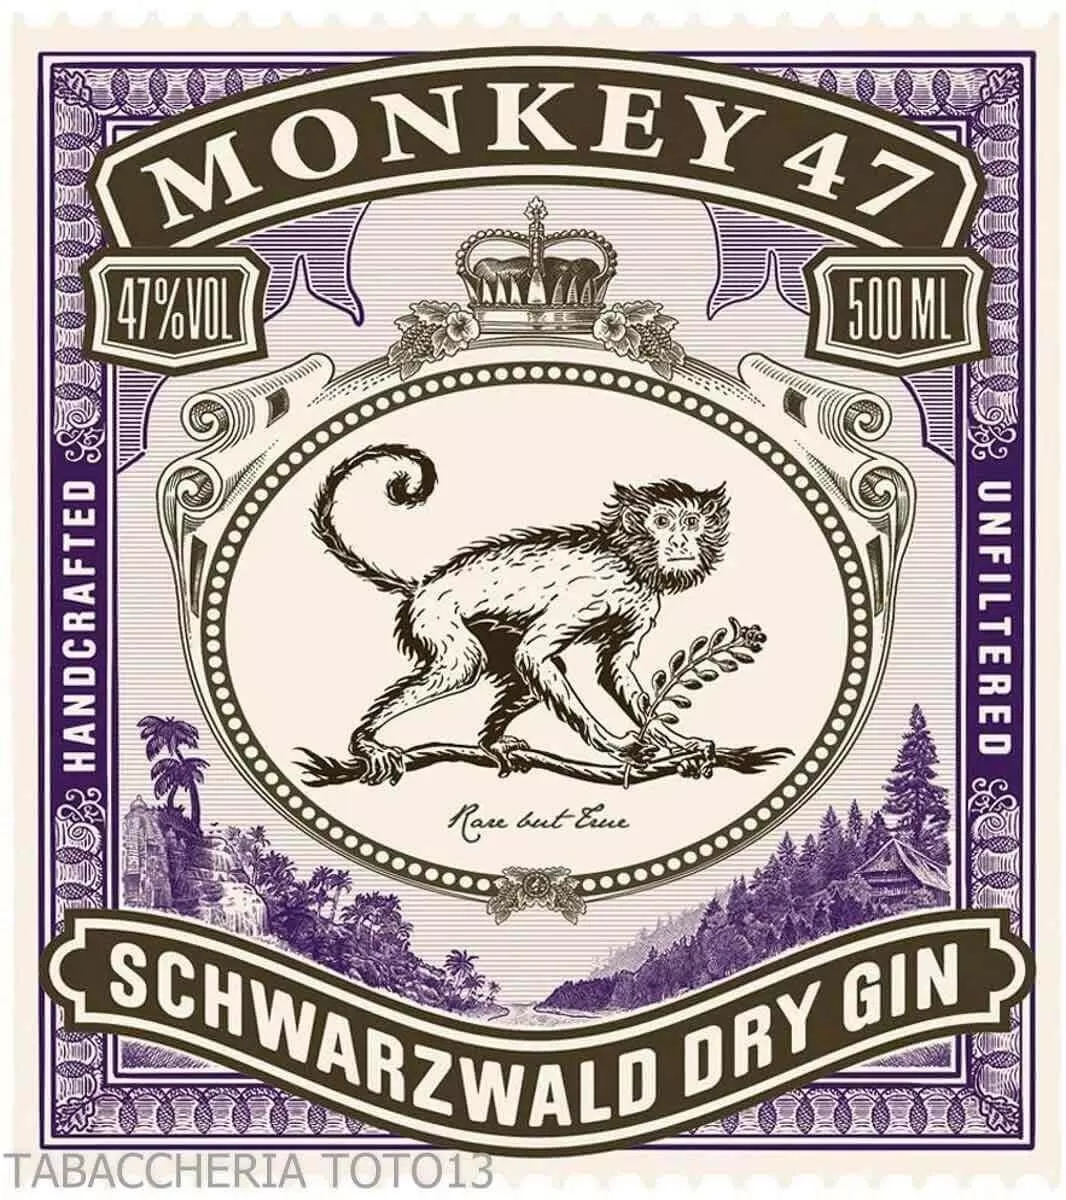 Monkey 47 Schwarzwald Dry Gin botanicals used | 47